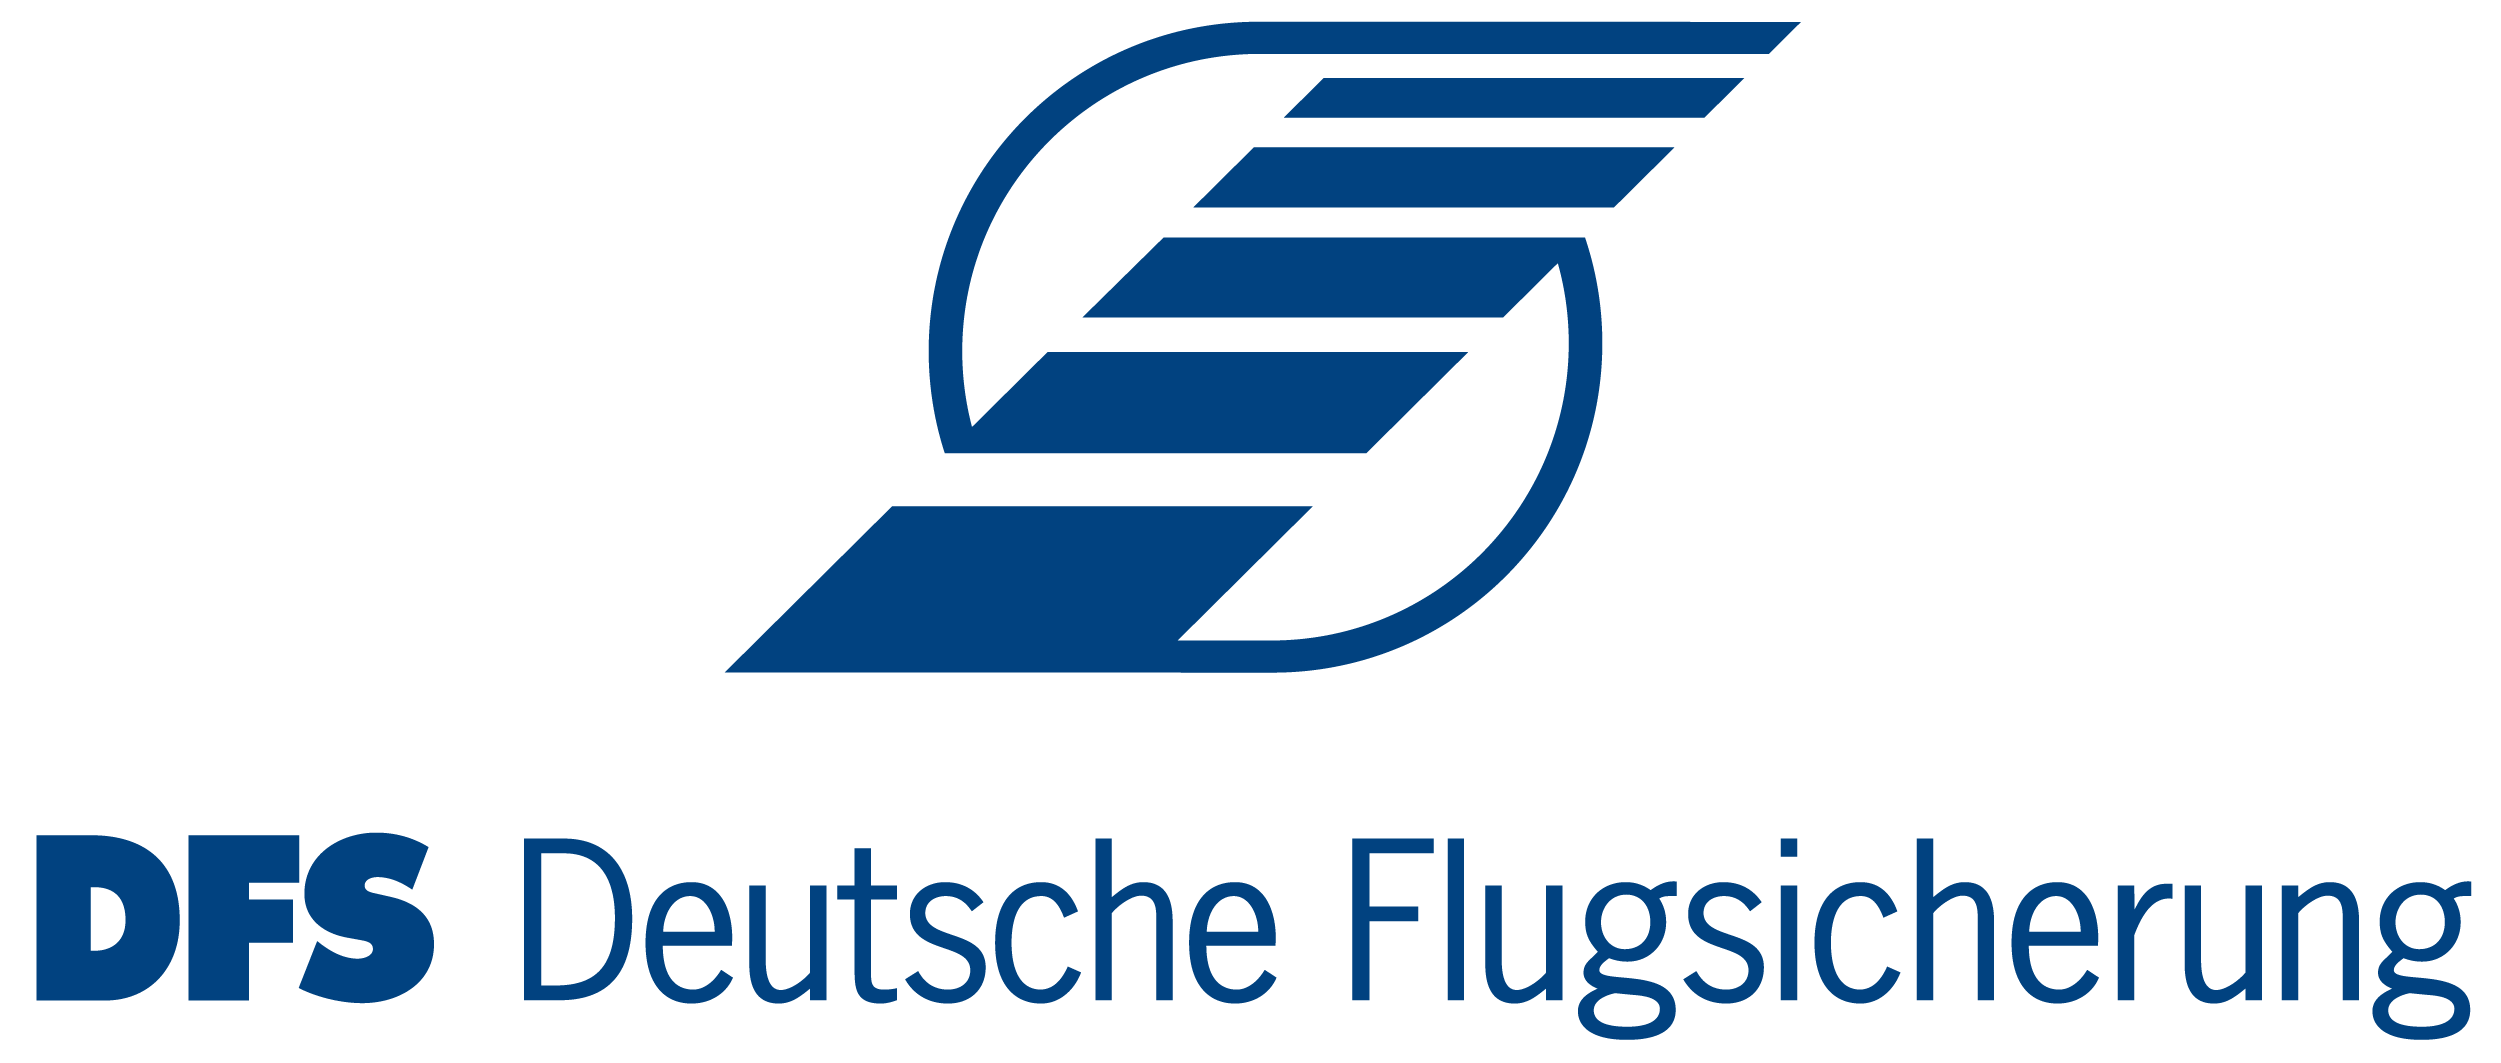 DFS Deutsche Flugsicherung Logo.